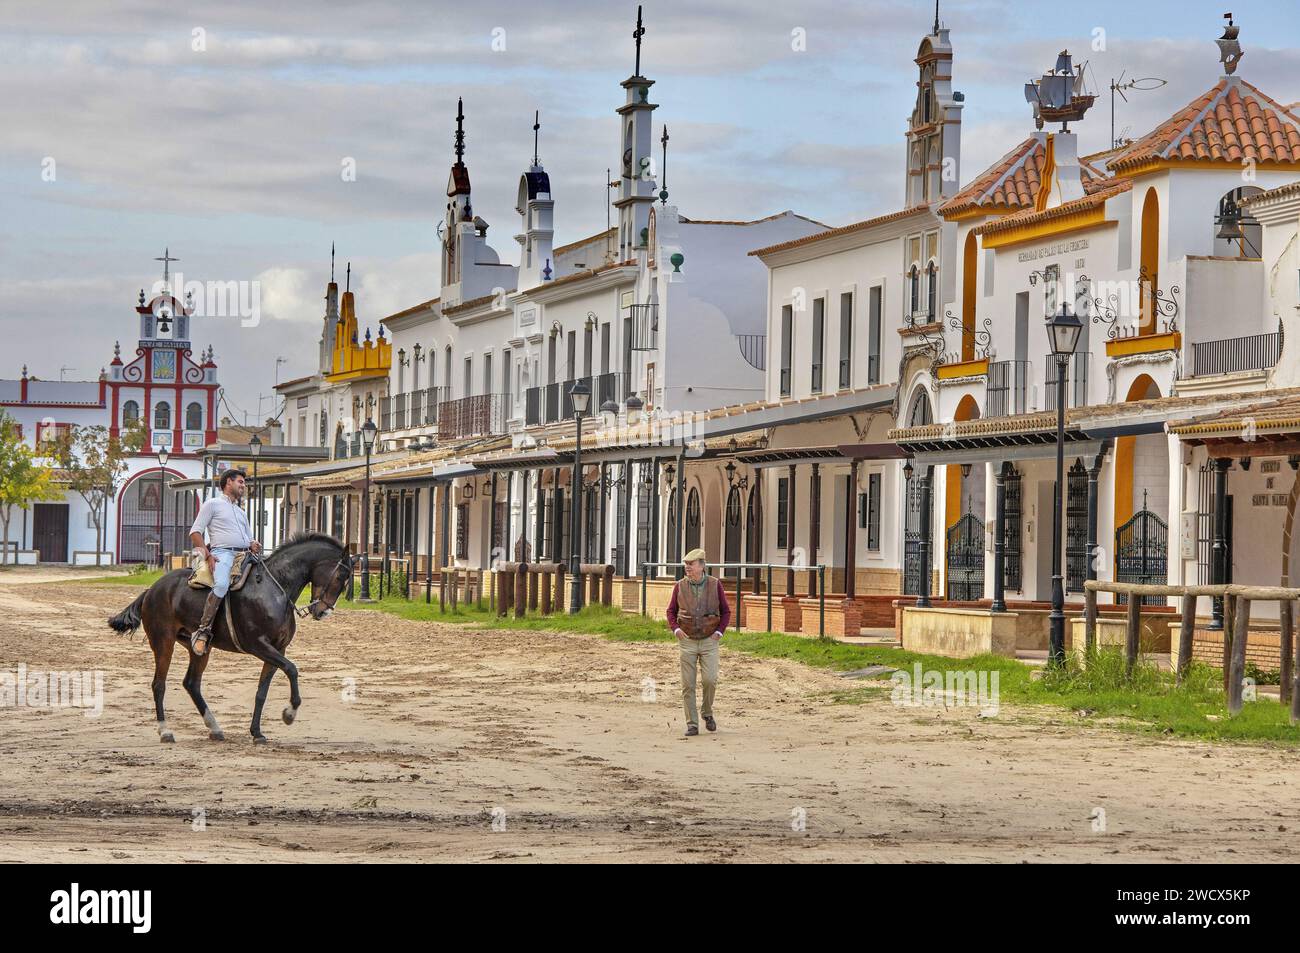 Spagna, Andalusia, El Rocío, cavaliere su un cavallo nero insieme a un vecchio che indossa un berretto in una strada sabbiosa fiancheggiata da hermandades, le case delle confraternite cattoliche Foto Stock